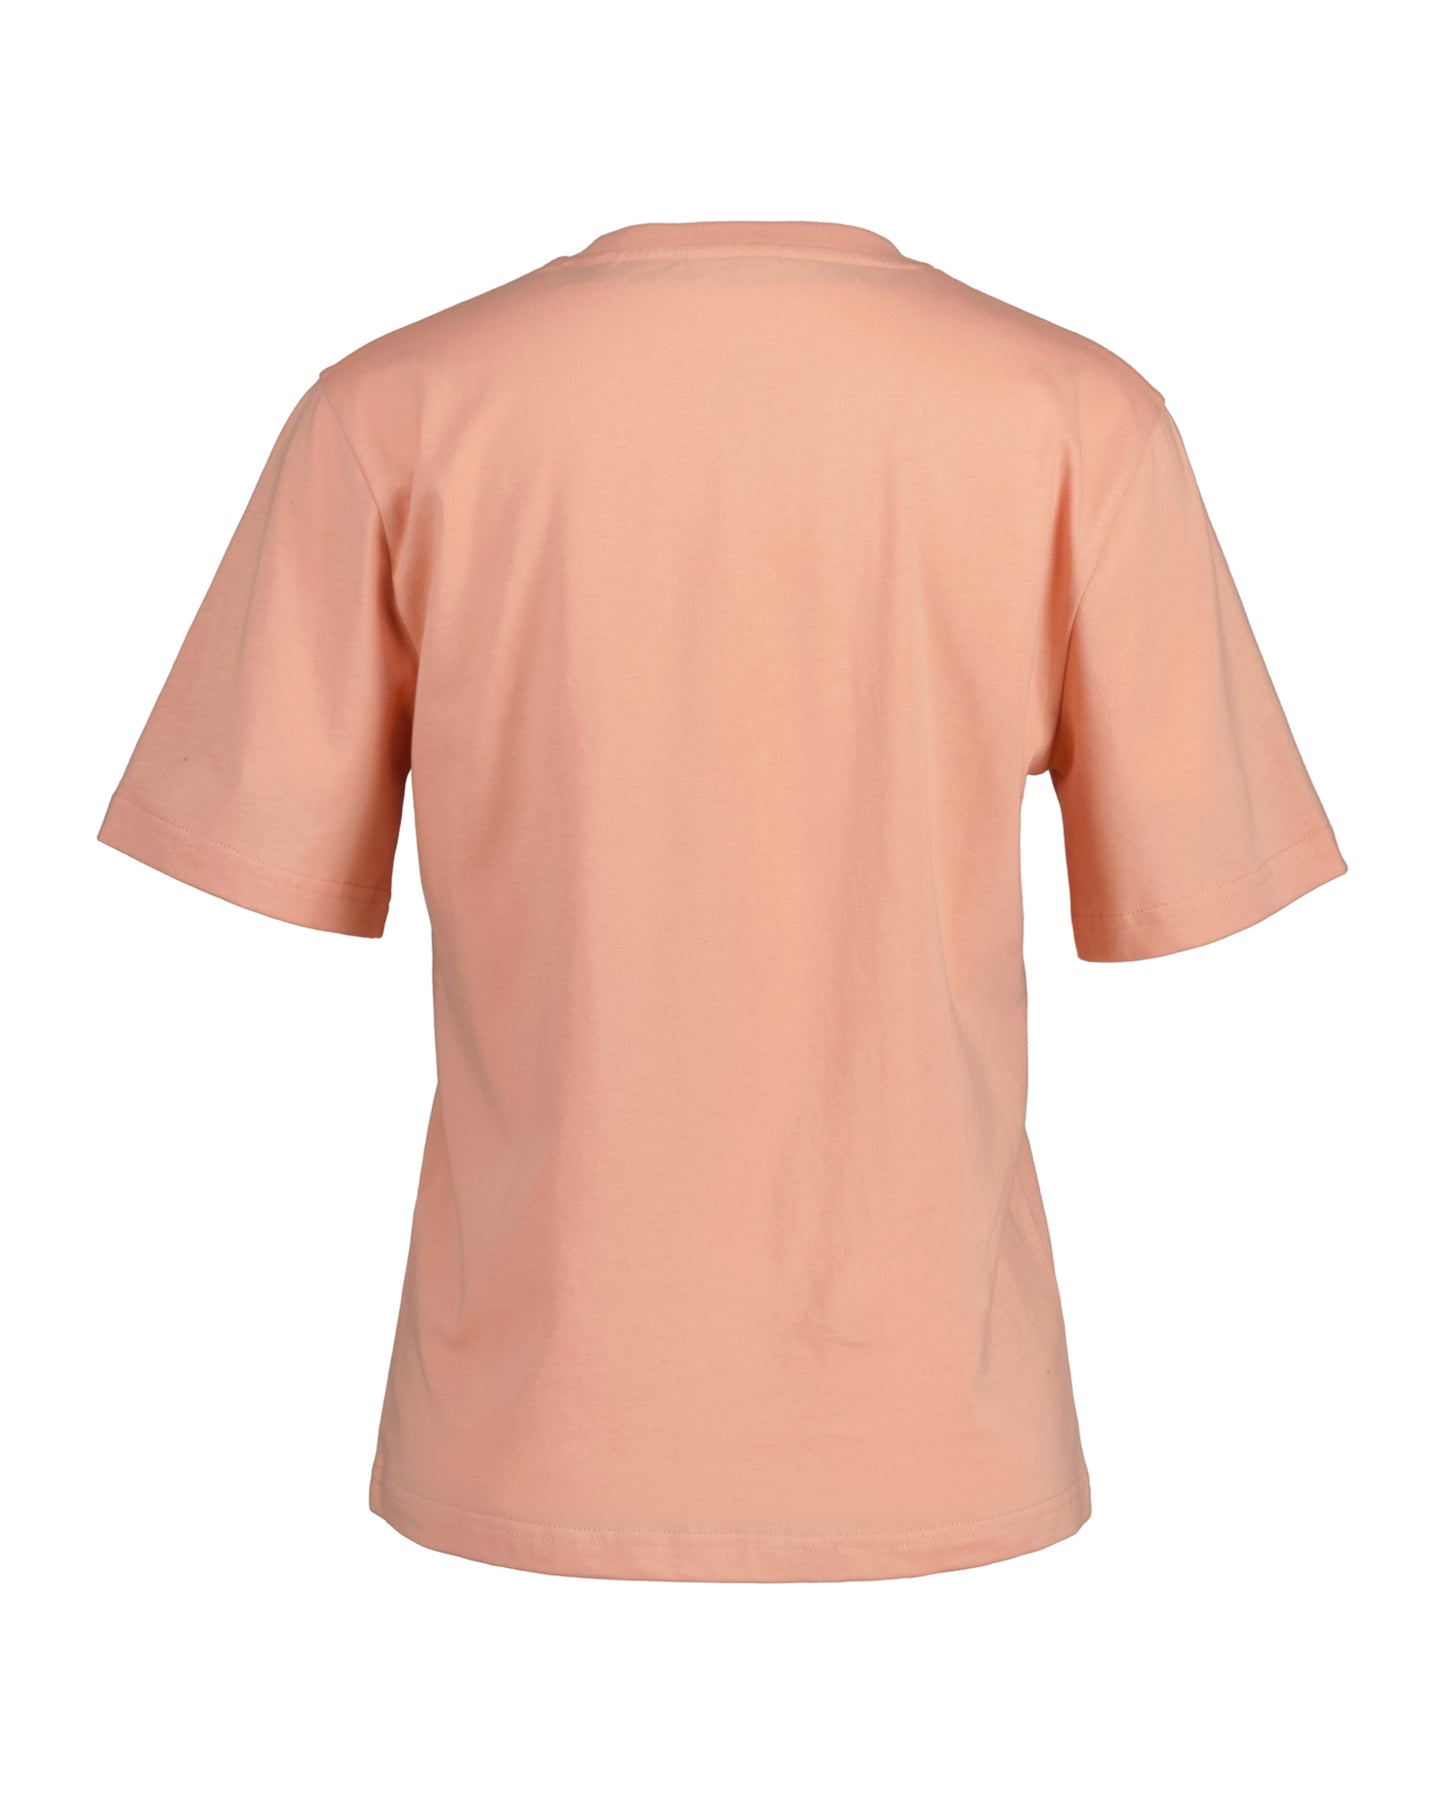 Floral Graphic T-Shirt - Guava Orange